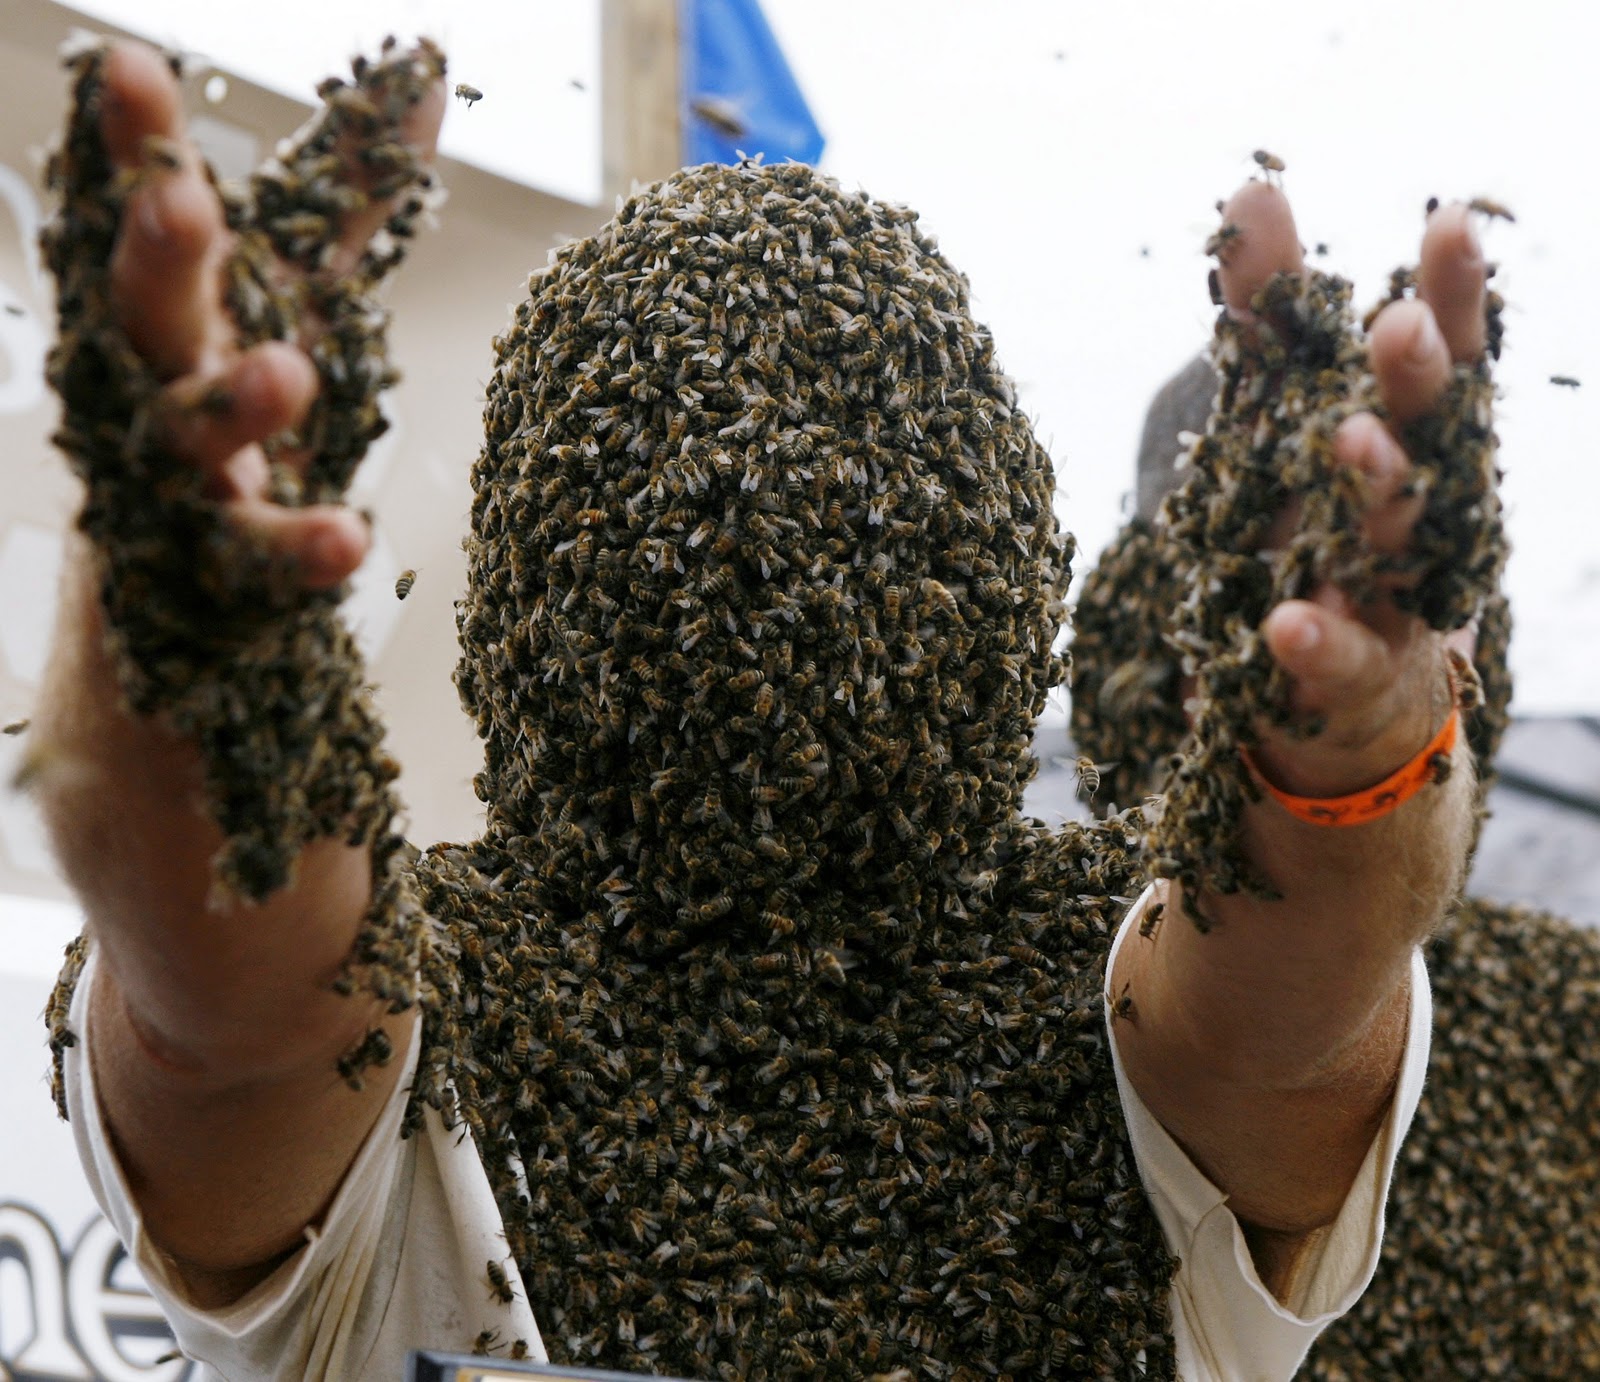 Izrazite svoja osecanja slikom! Bee+Beard+man+covered+in+bees